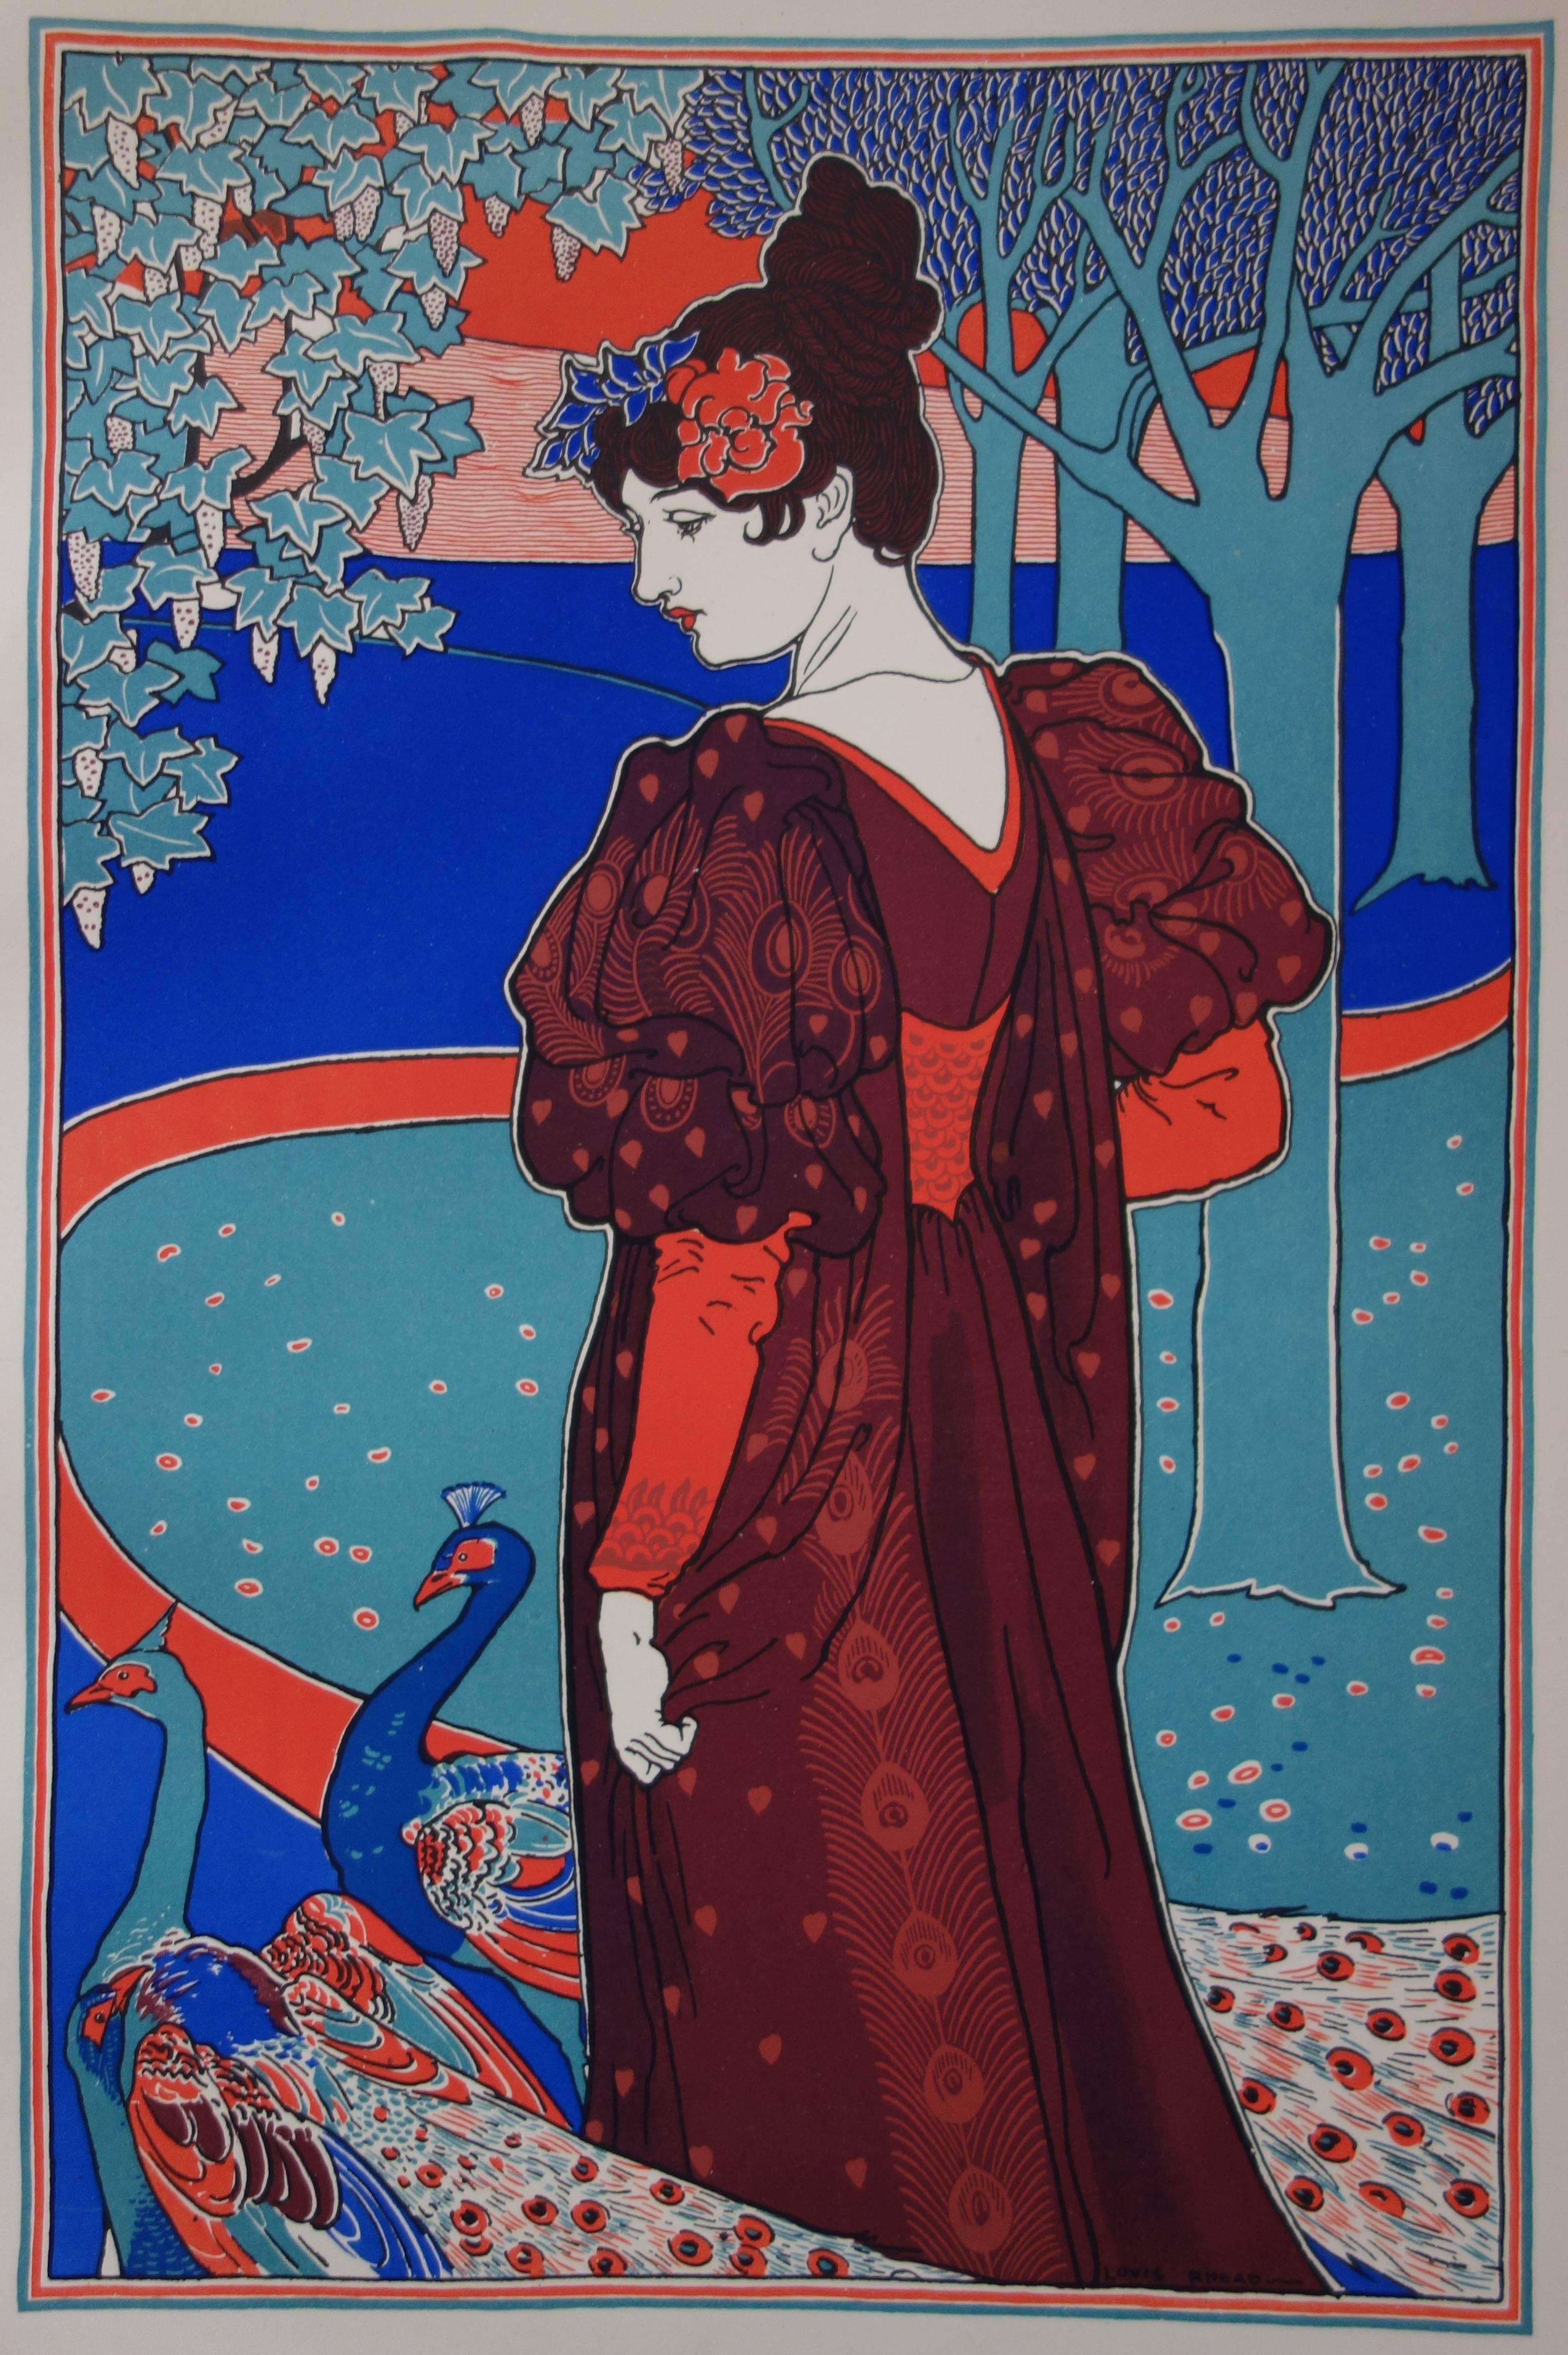 La femme au paon - original lithograph (1897/98) - Art Nouveau Print by Louis Rhead